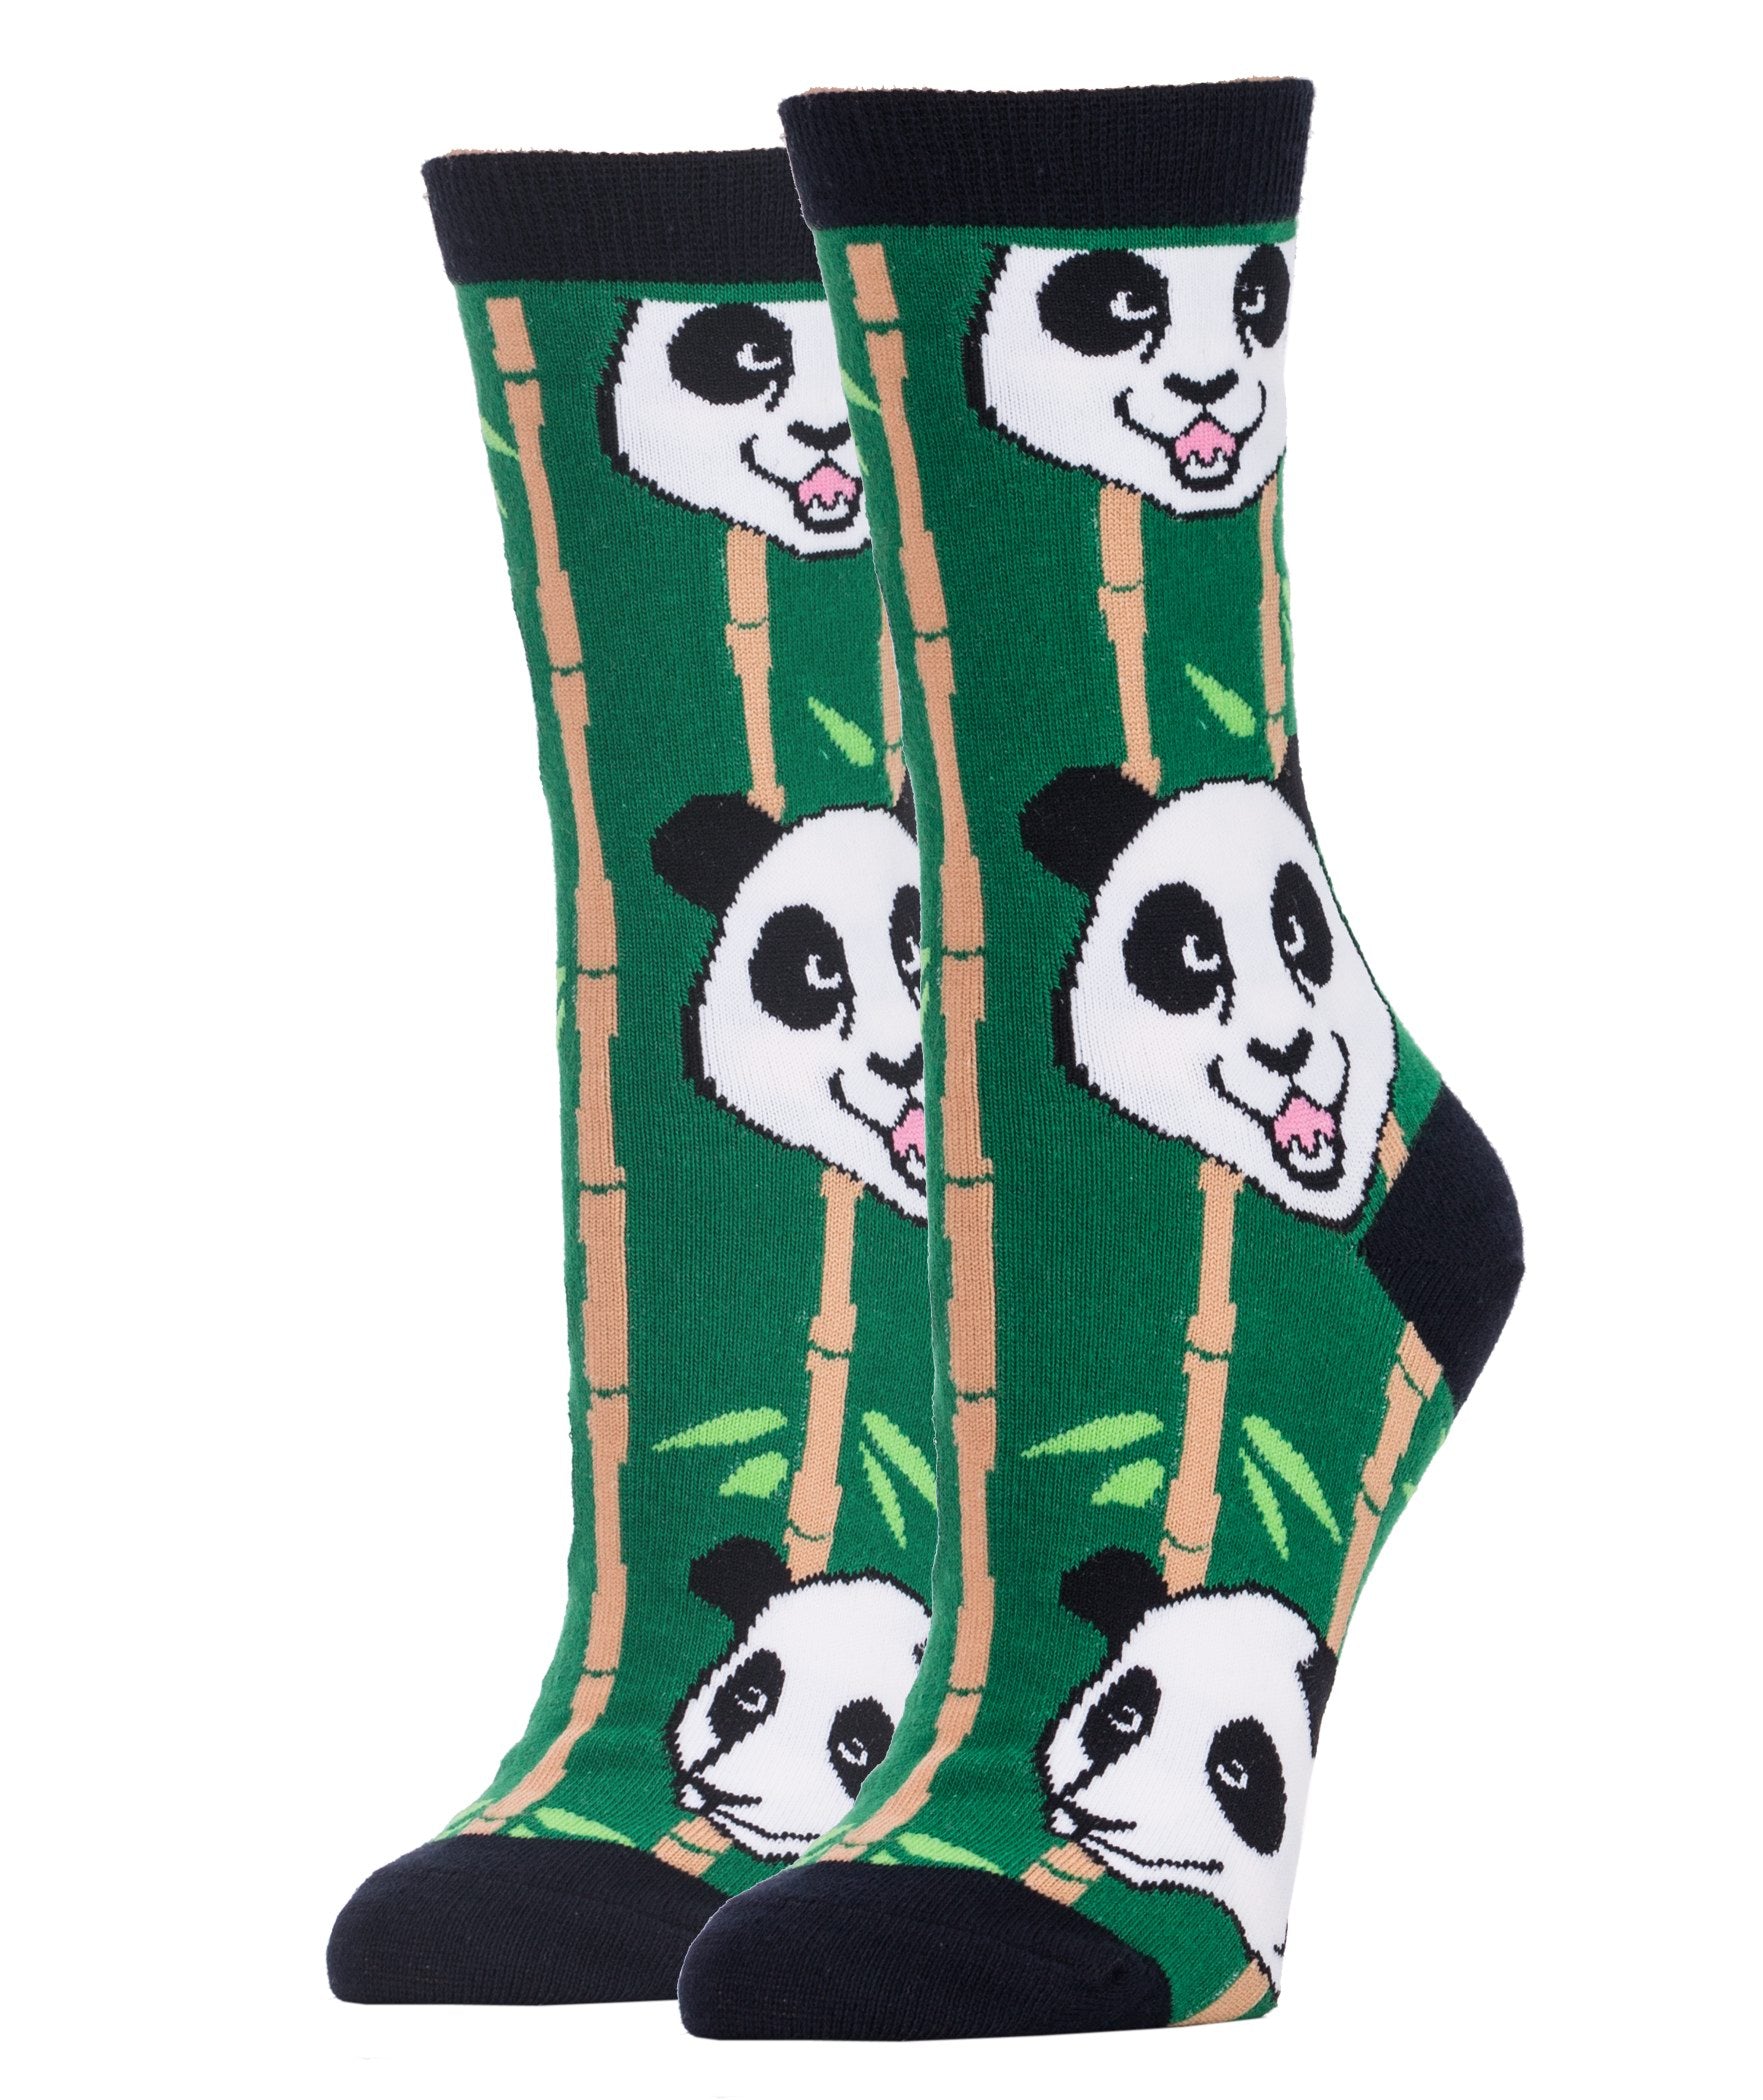 Panda Life Socks | Novelty Crew Socks For Women